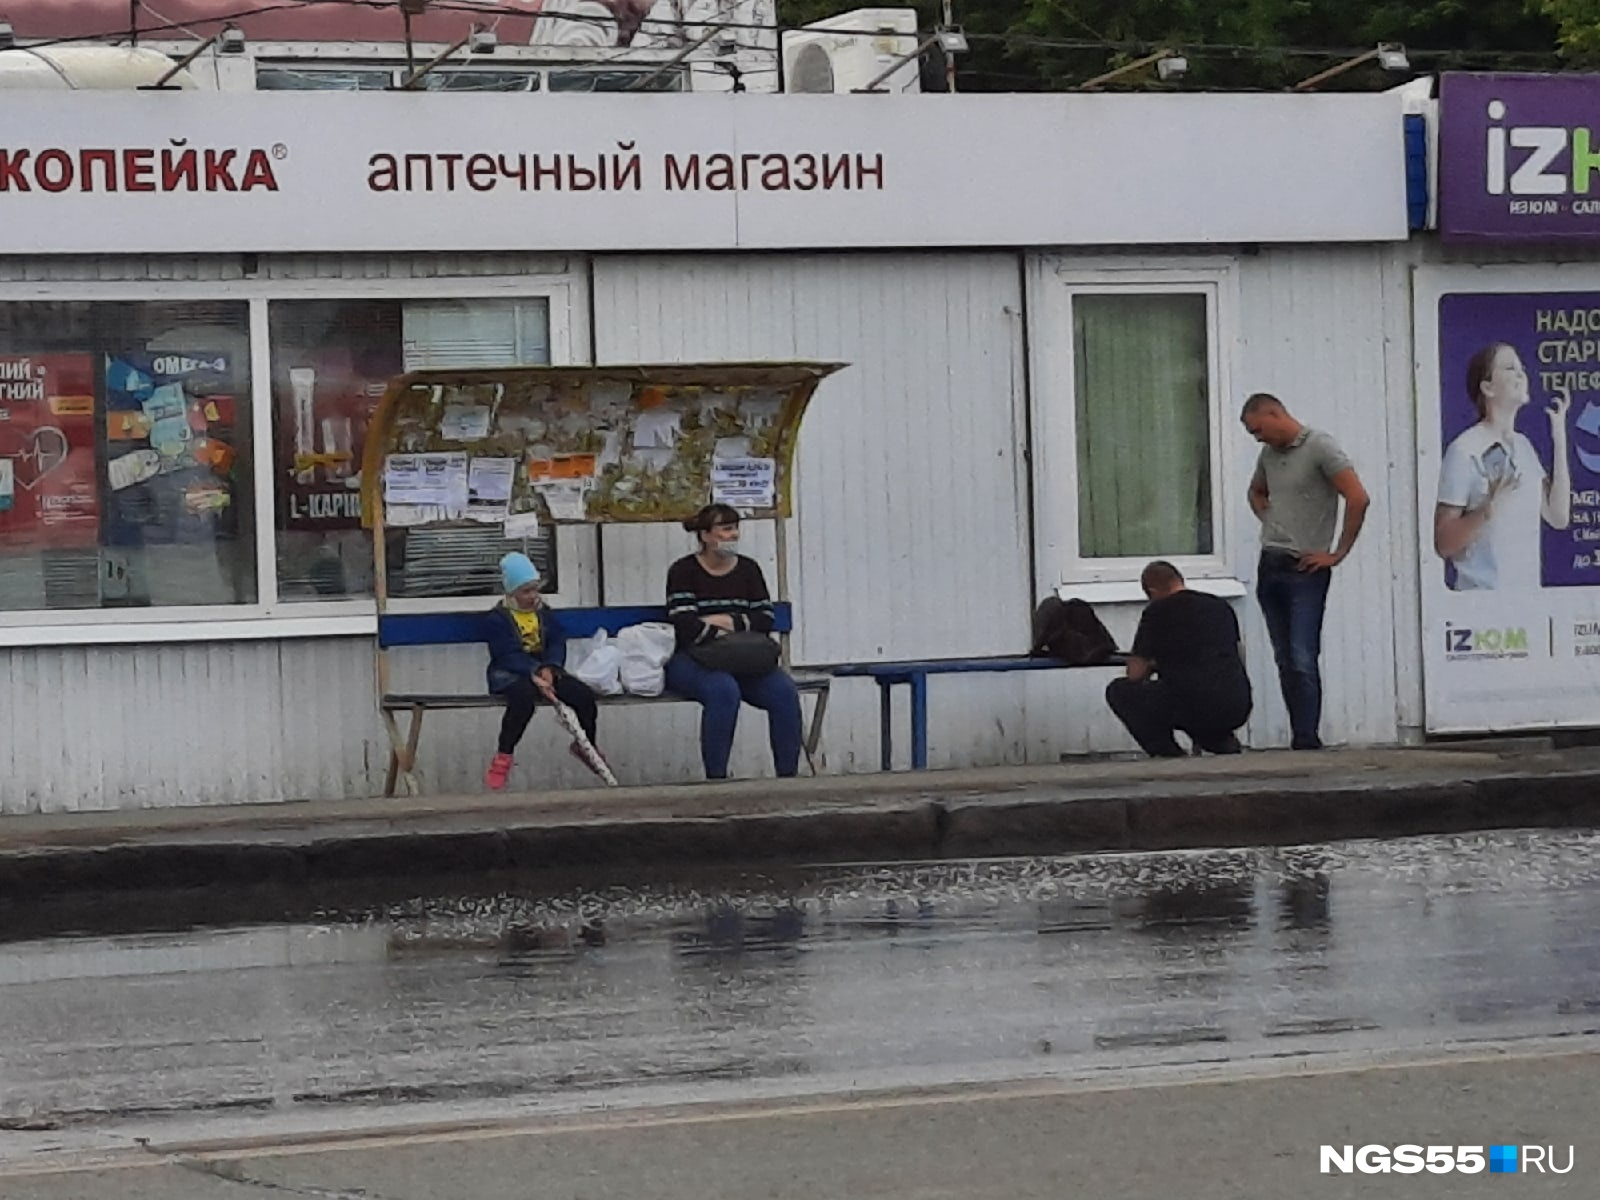 Лучшая защита от дождя: на остановке в Чкаловске стоят скамейки с очень маленькими навесами